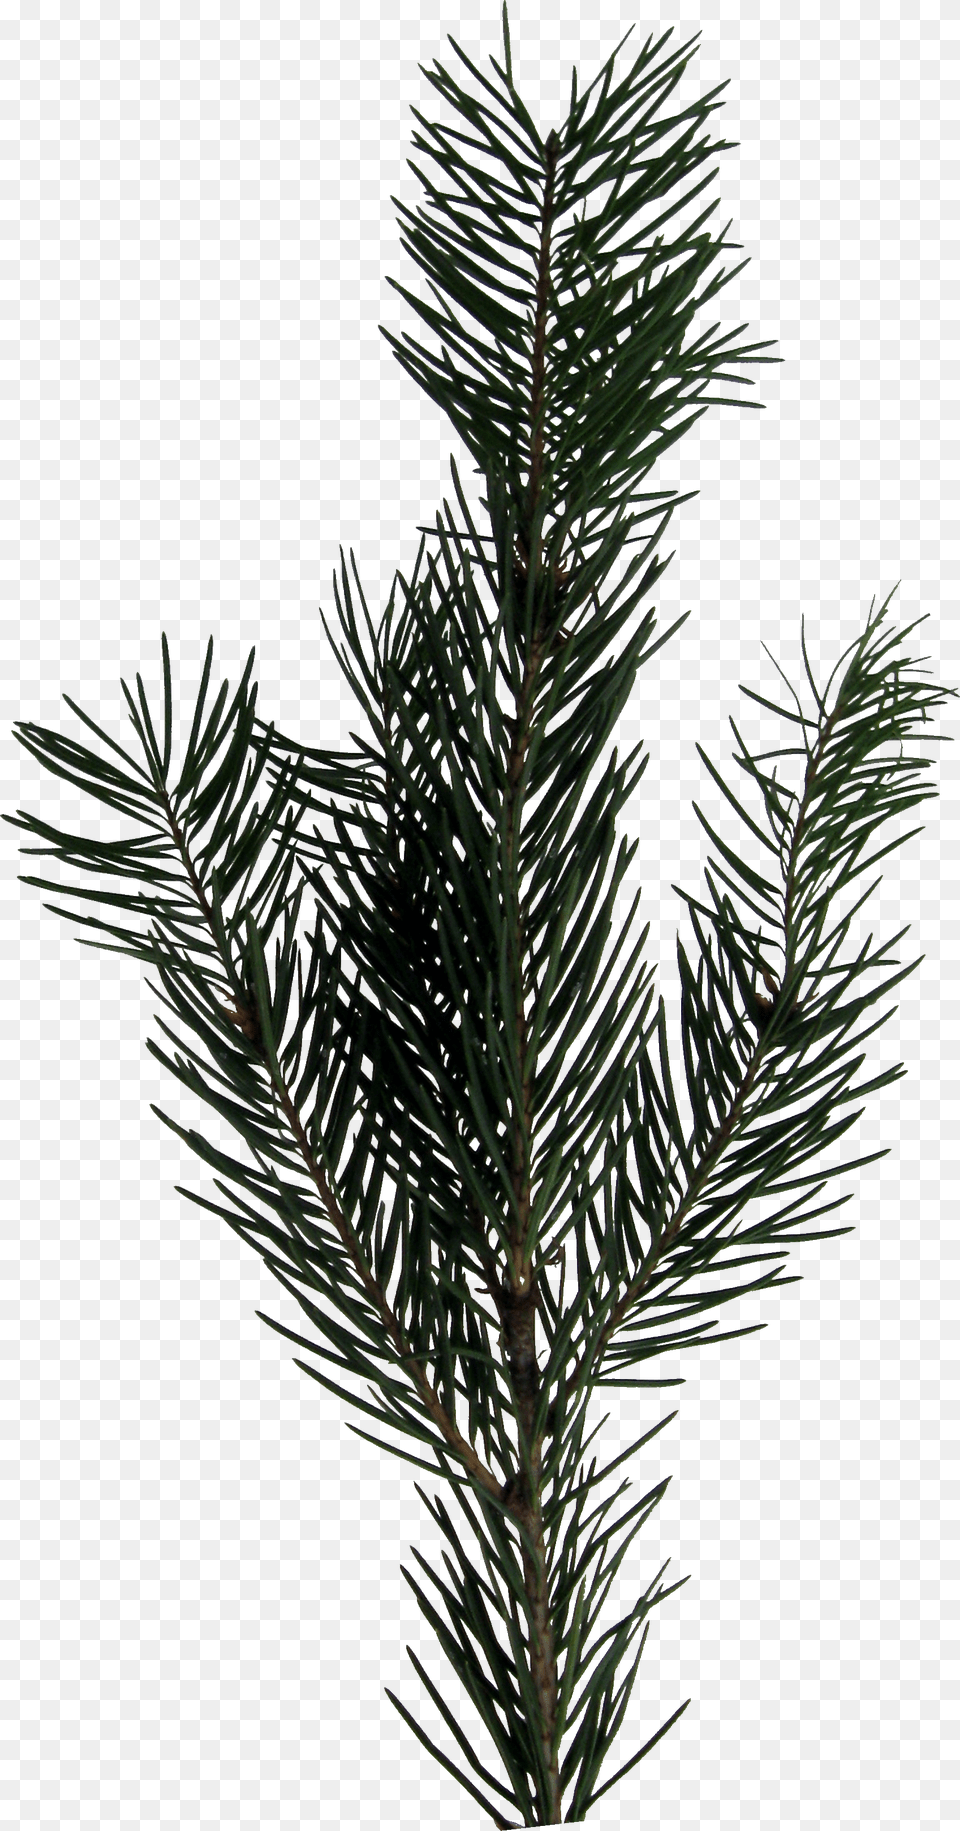 Evergreen Sprig Evergreen Sprig, Conifer, Fir, Pine, Plant Png Image